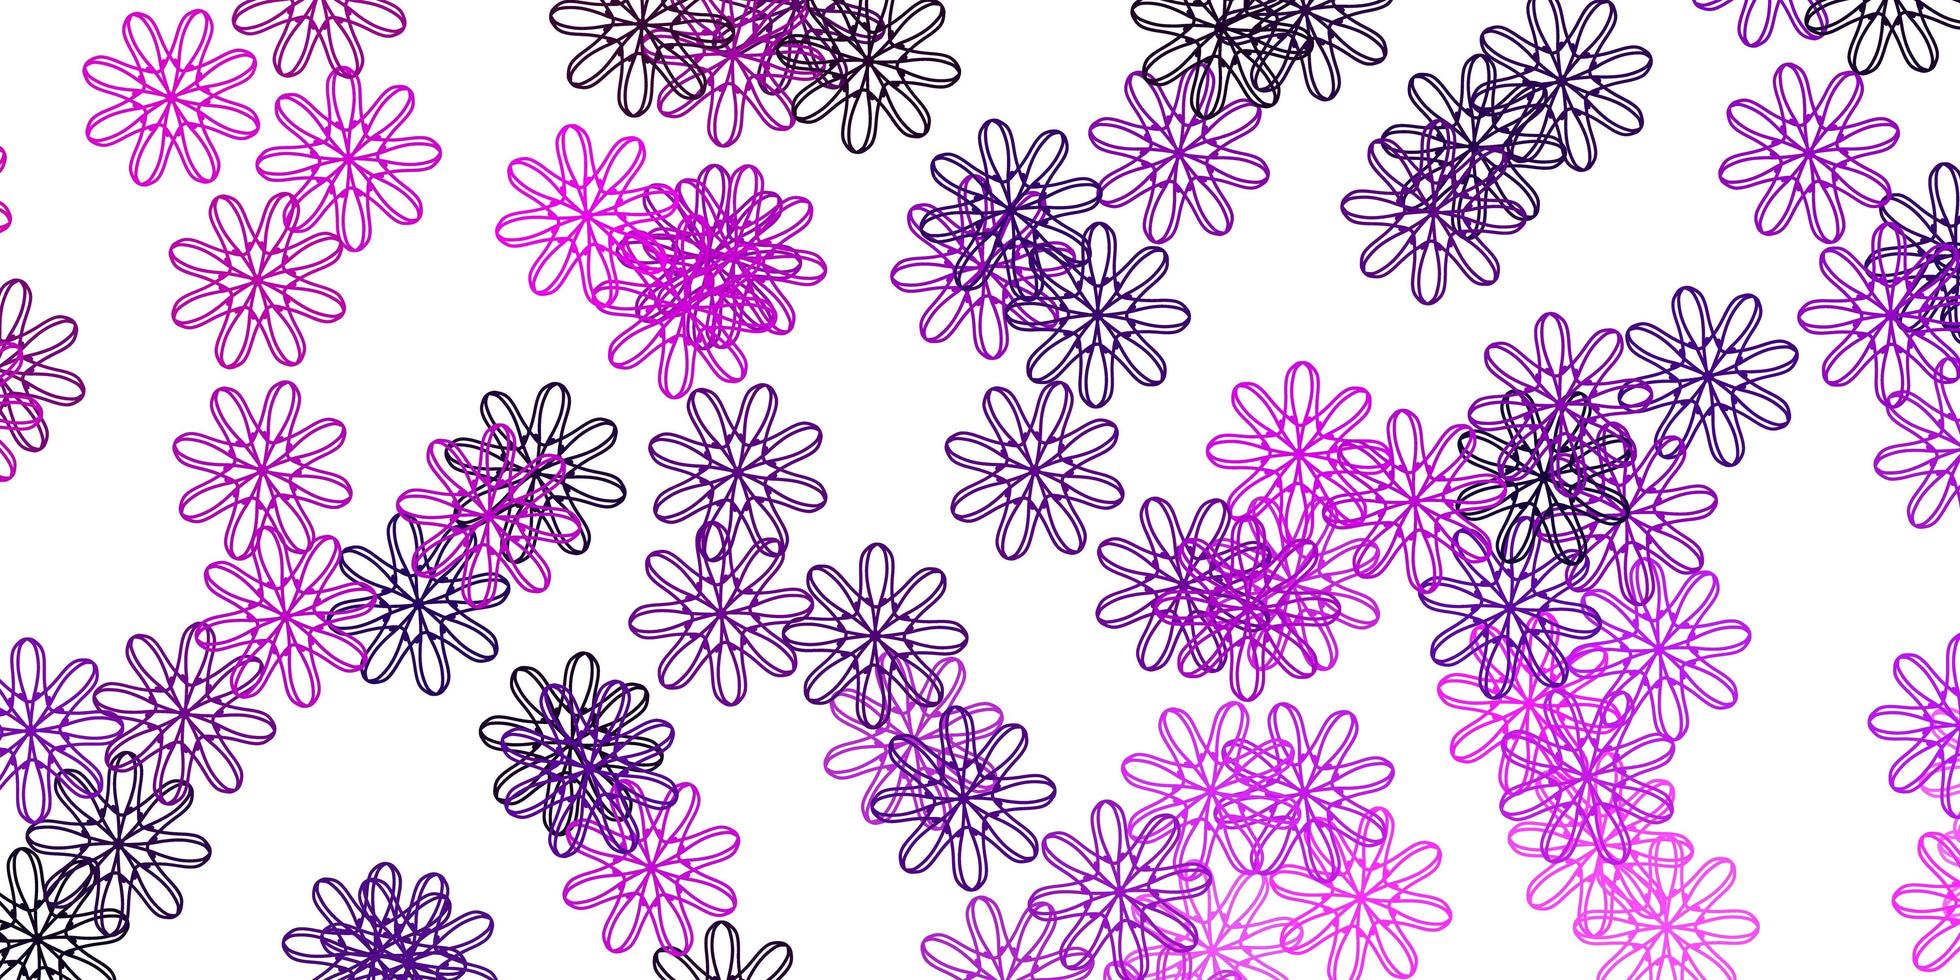 struttura di doodle di vettore viola chiaro, rosa con fiori.